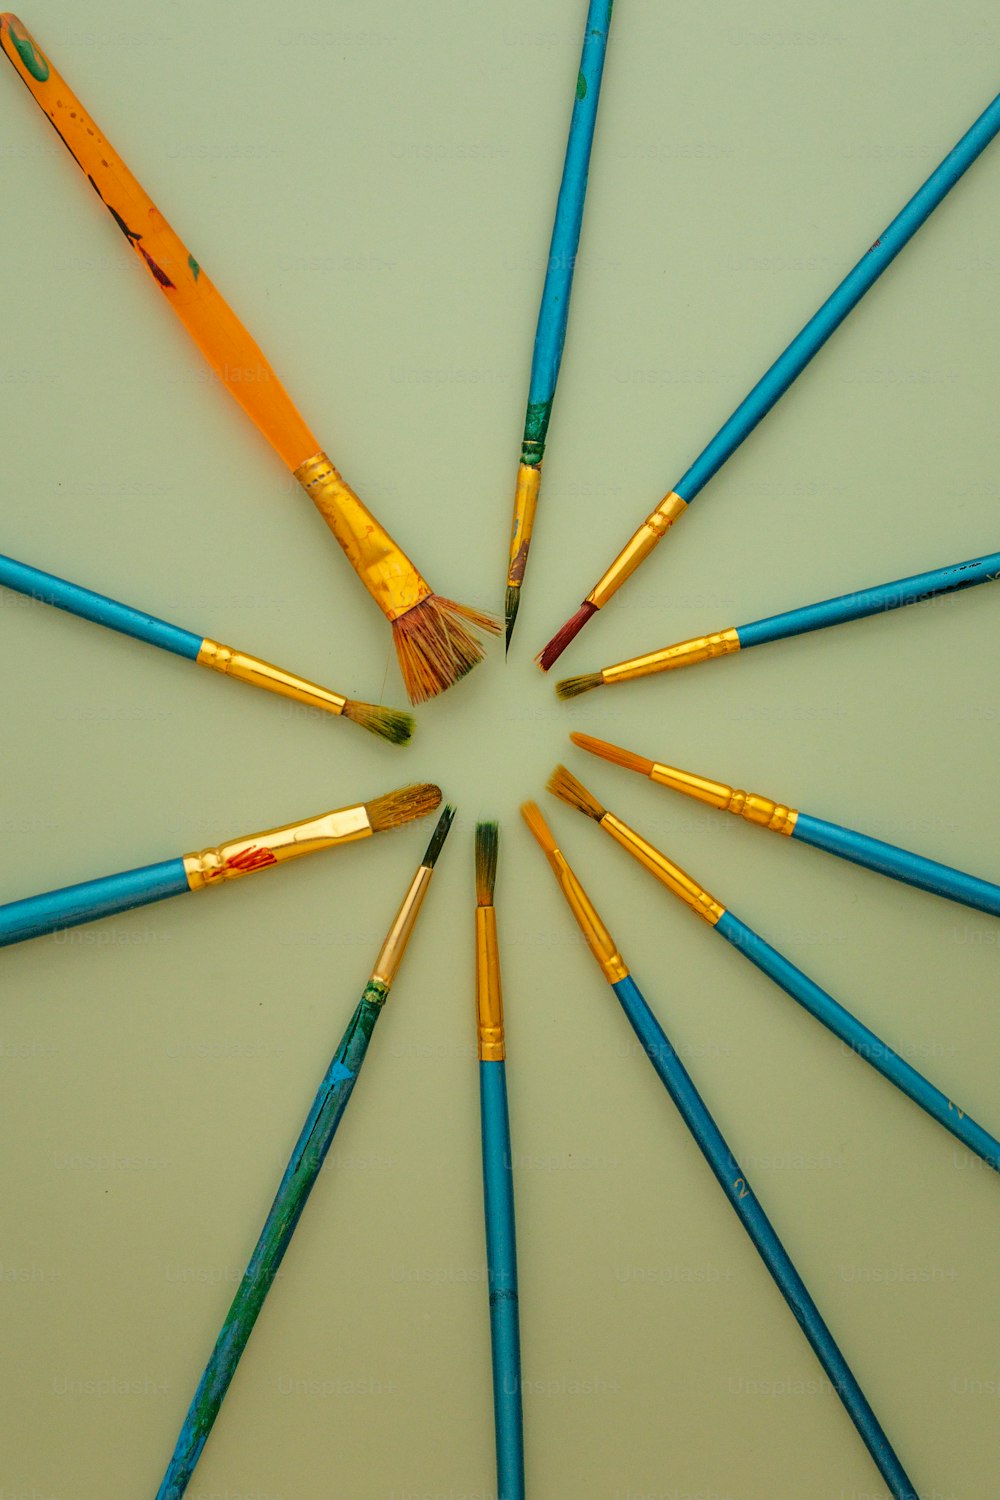 un groupe de crayons de couleur